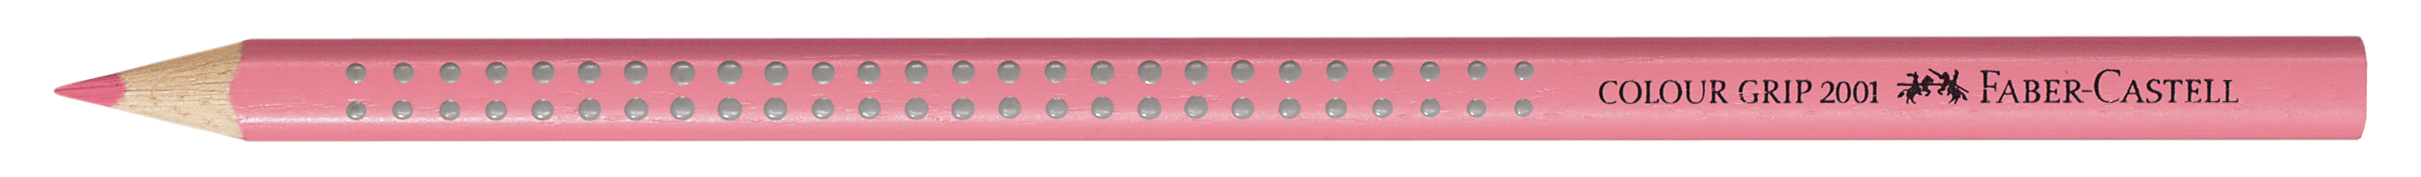 FABER-CASTELL Crayon de couleur Colour Grip 112429 rose